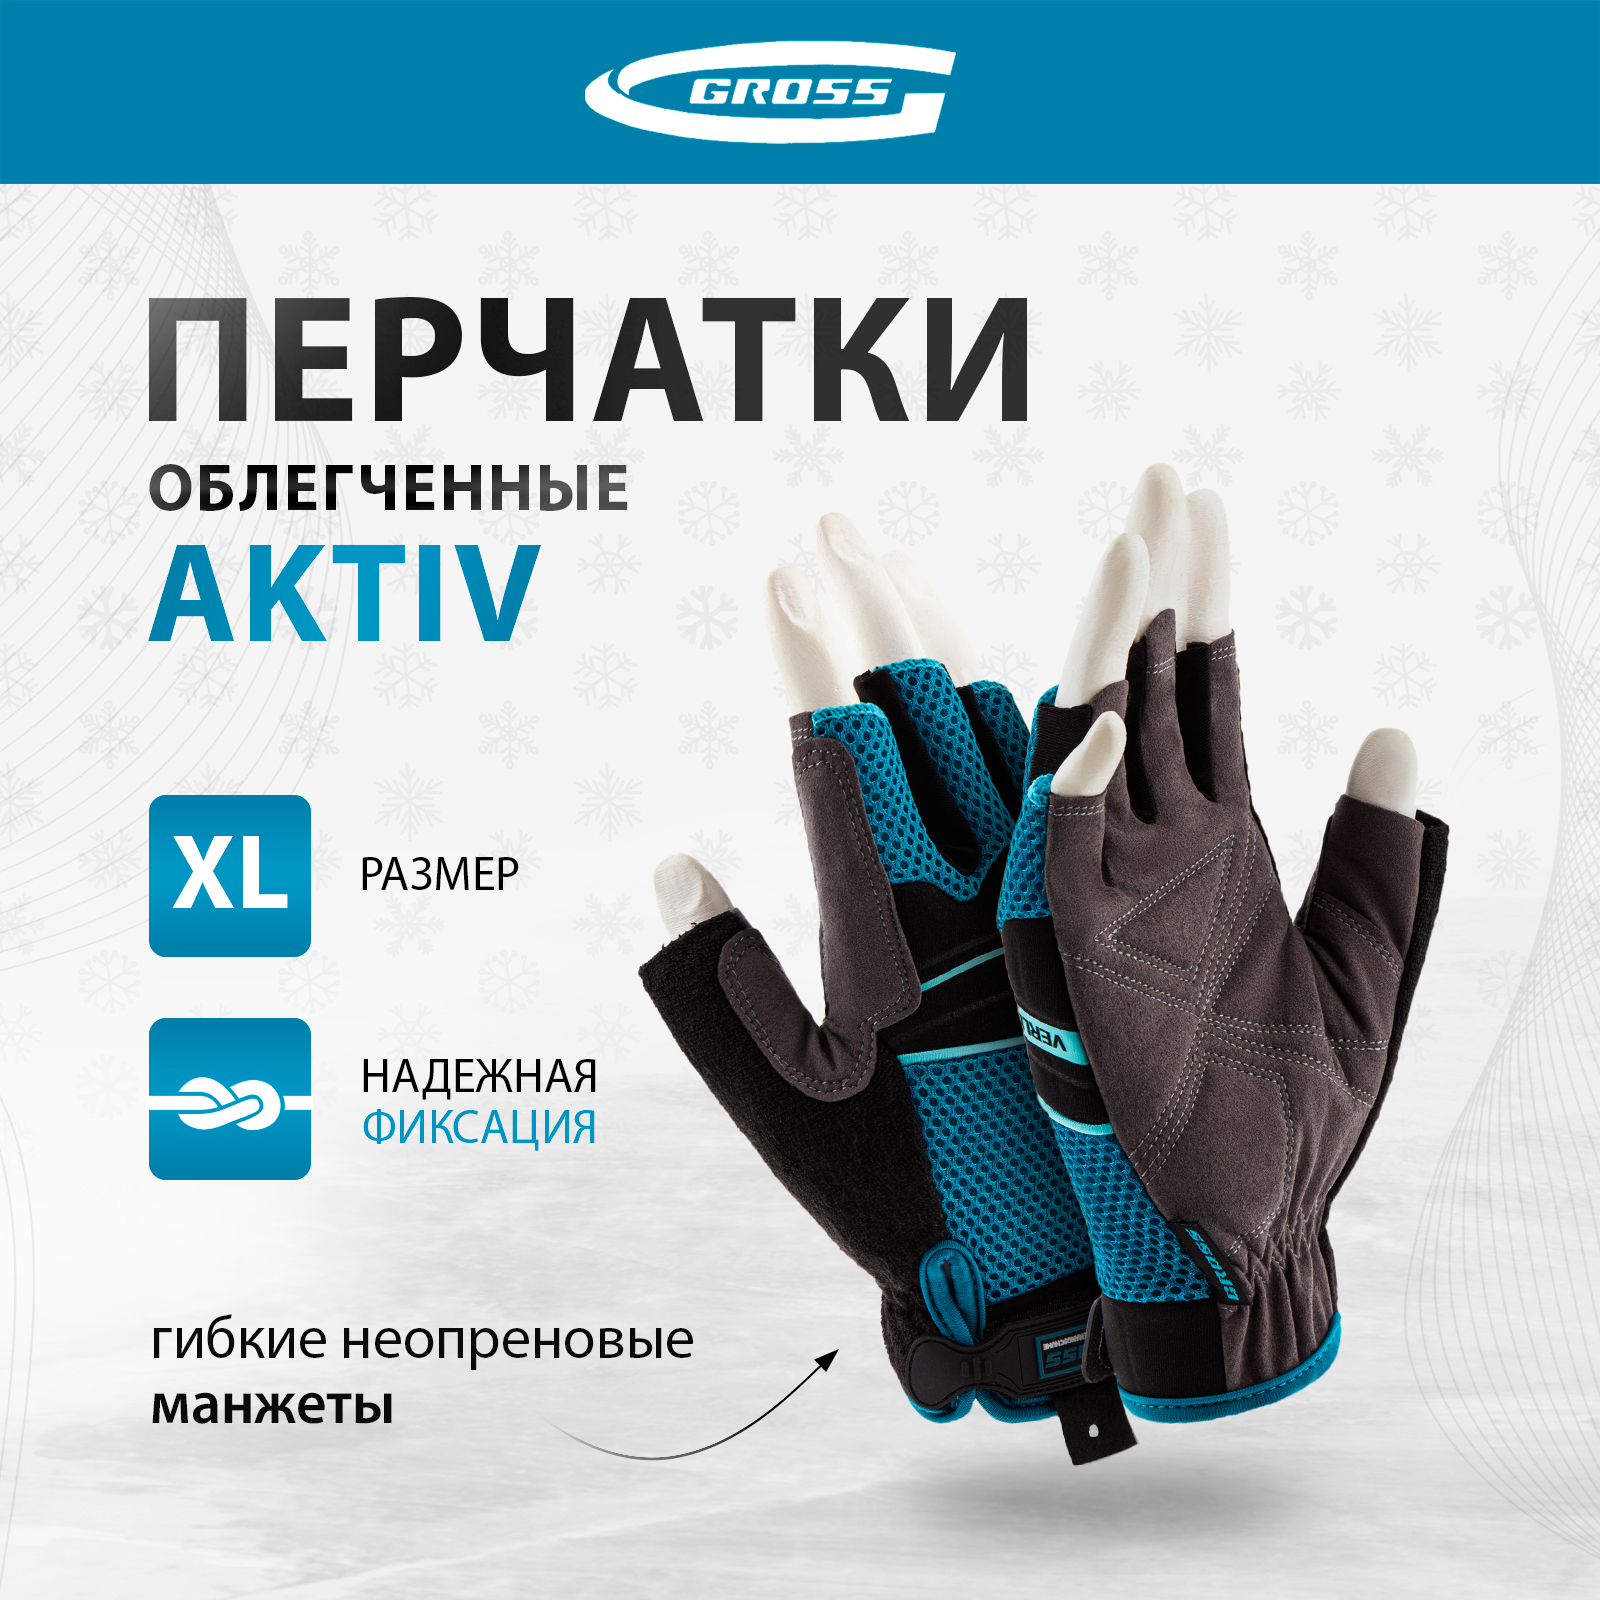 Перчатки комбинированные облегченные GROSS AKTIV открытые пальцыразмер XL (10) 90310 утепленные спилковые комбинированные перчатки armprotect